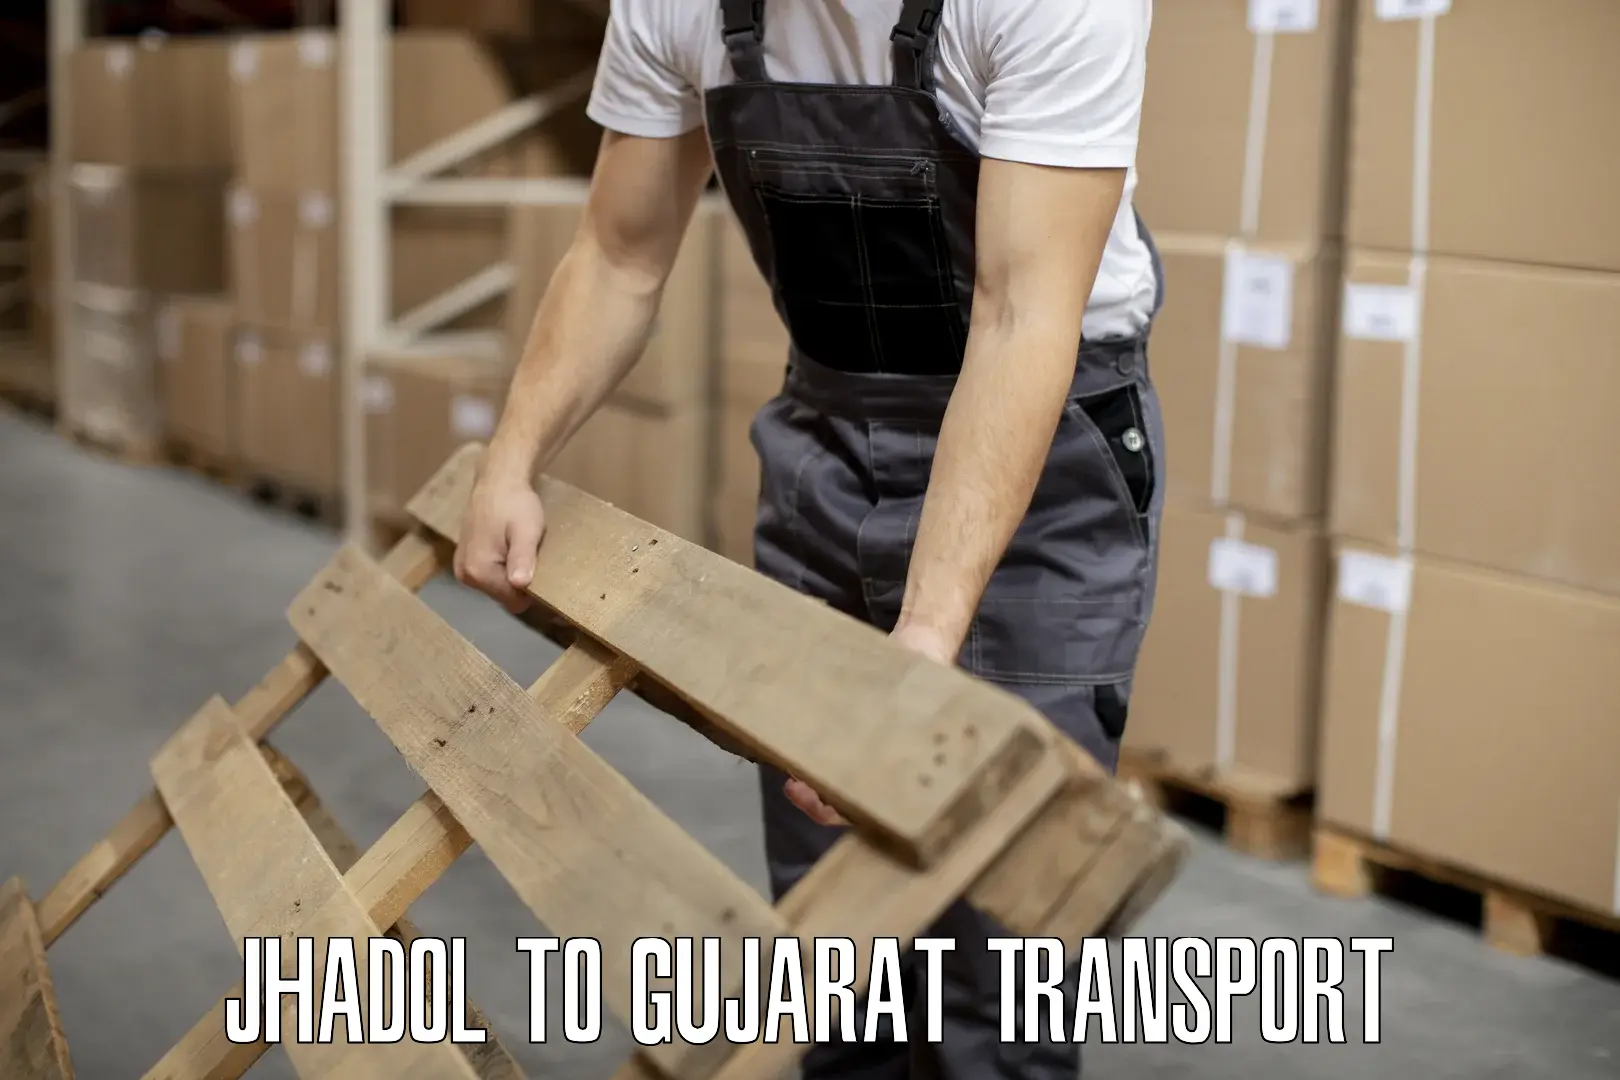 Delivery service Jhadol to Vijapur